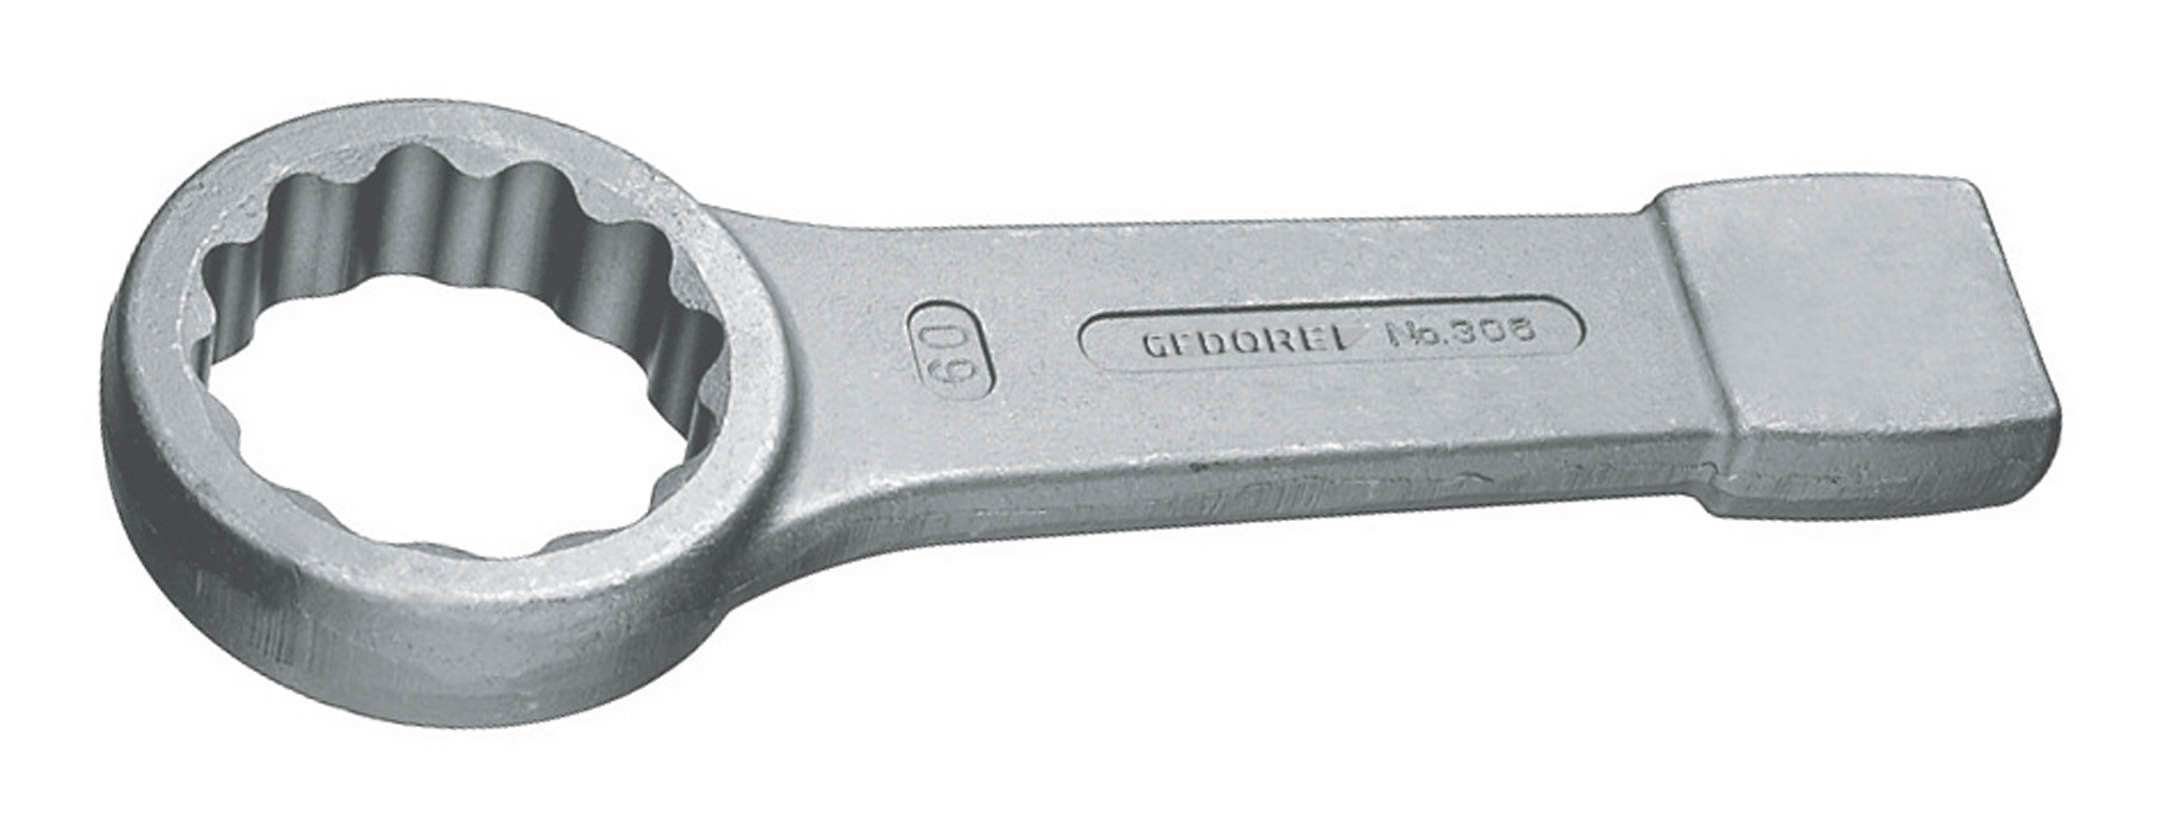 Gedore Ringschlüssel, Schlag DIN7444 65 mm